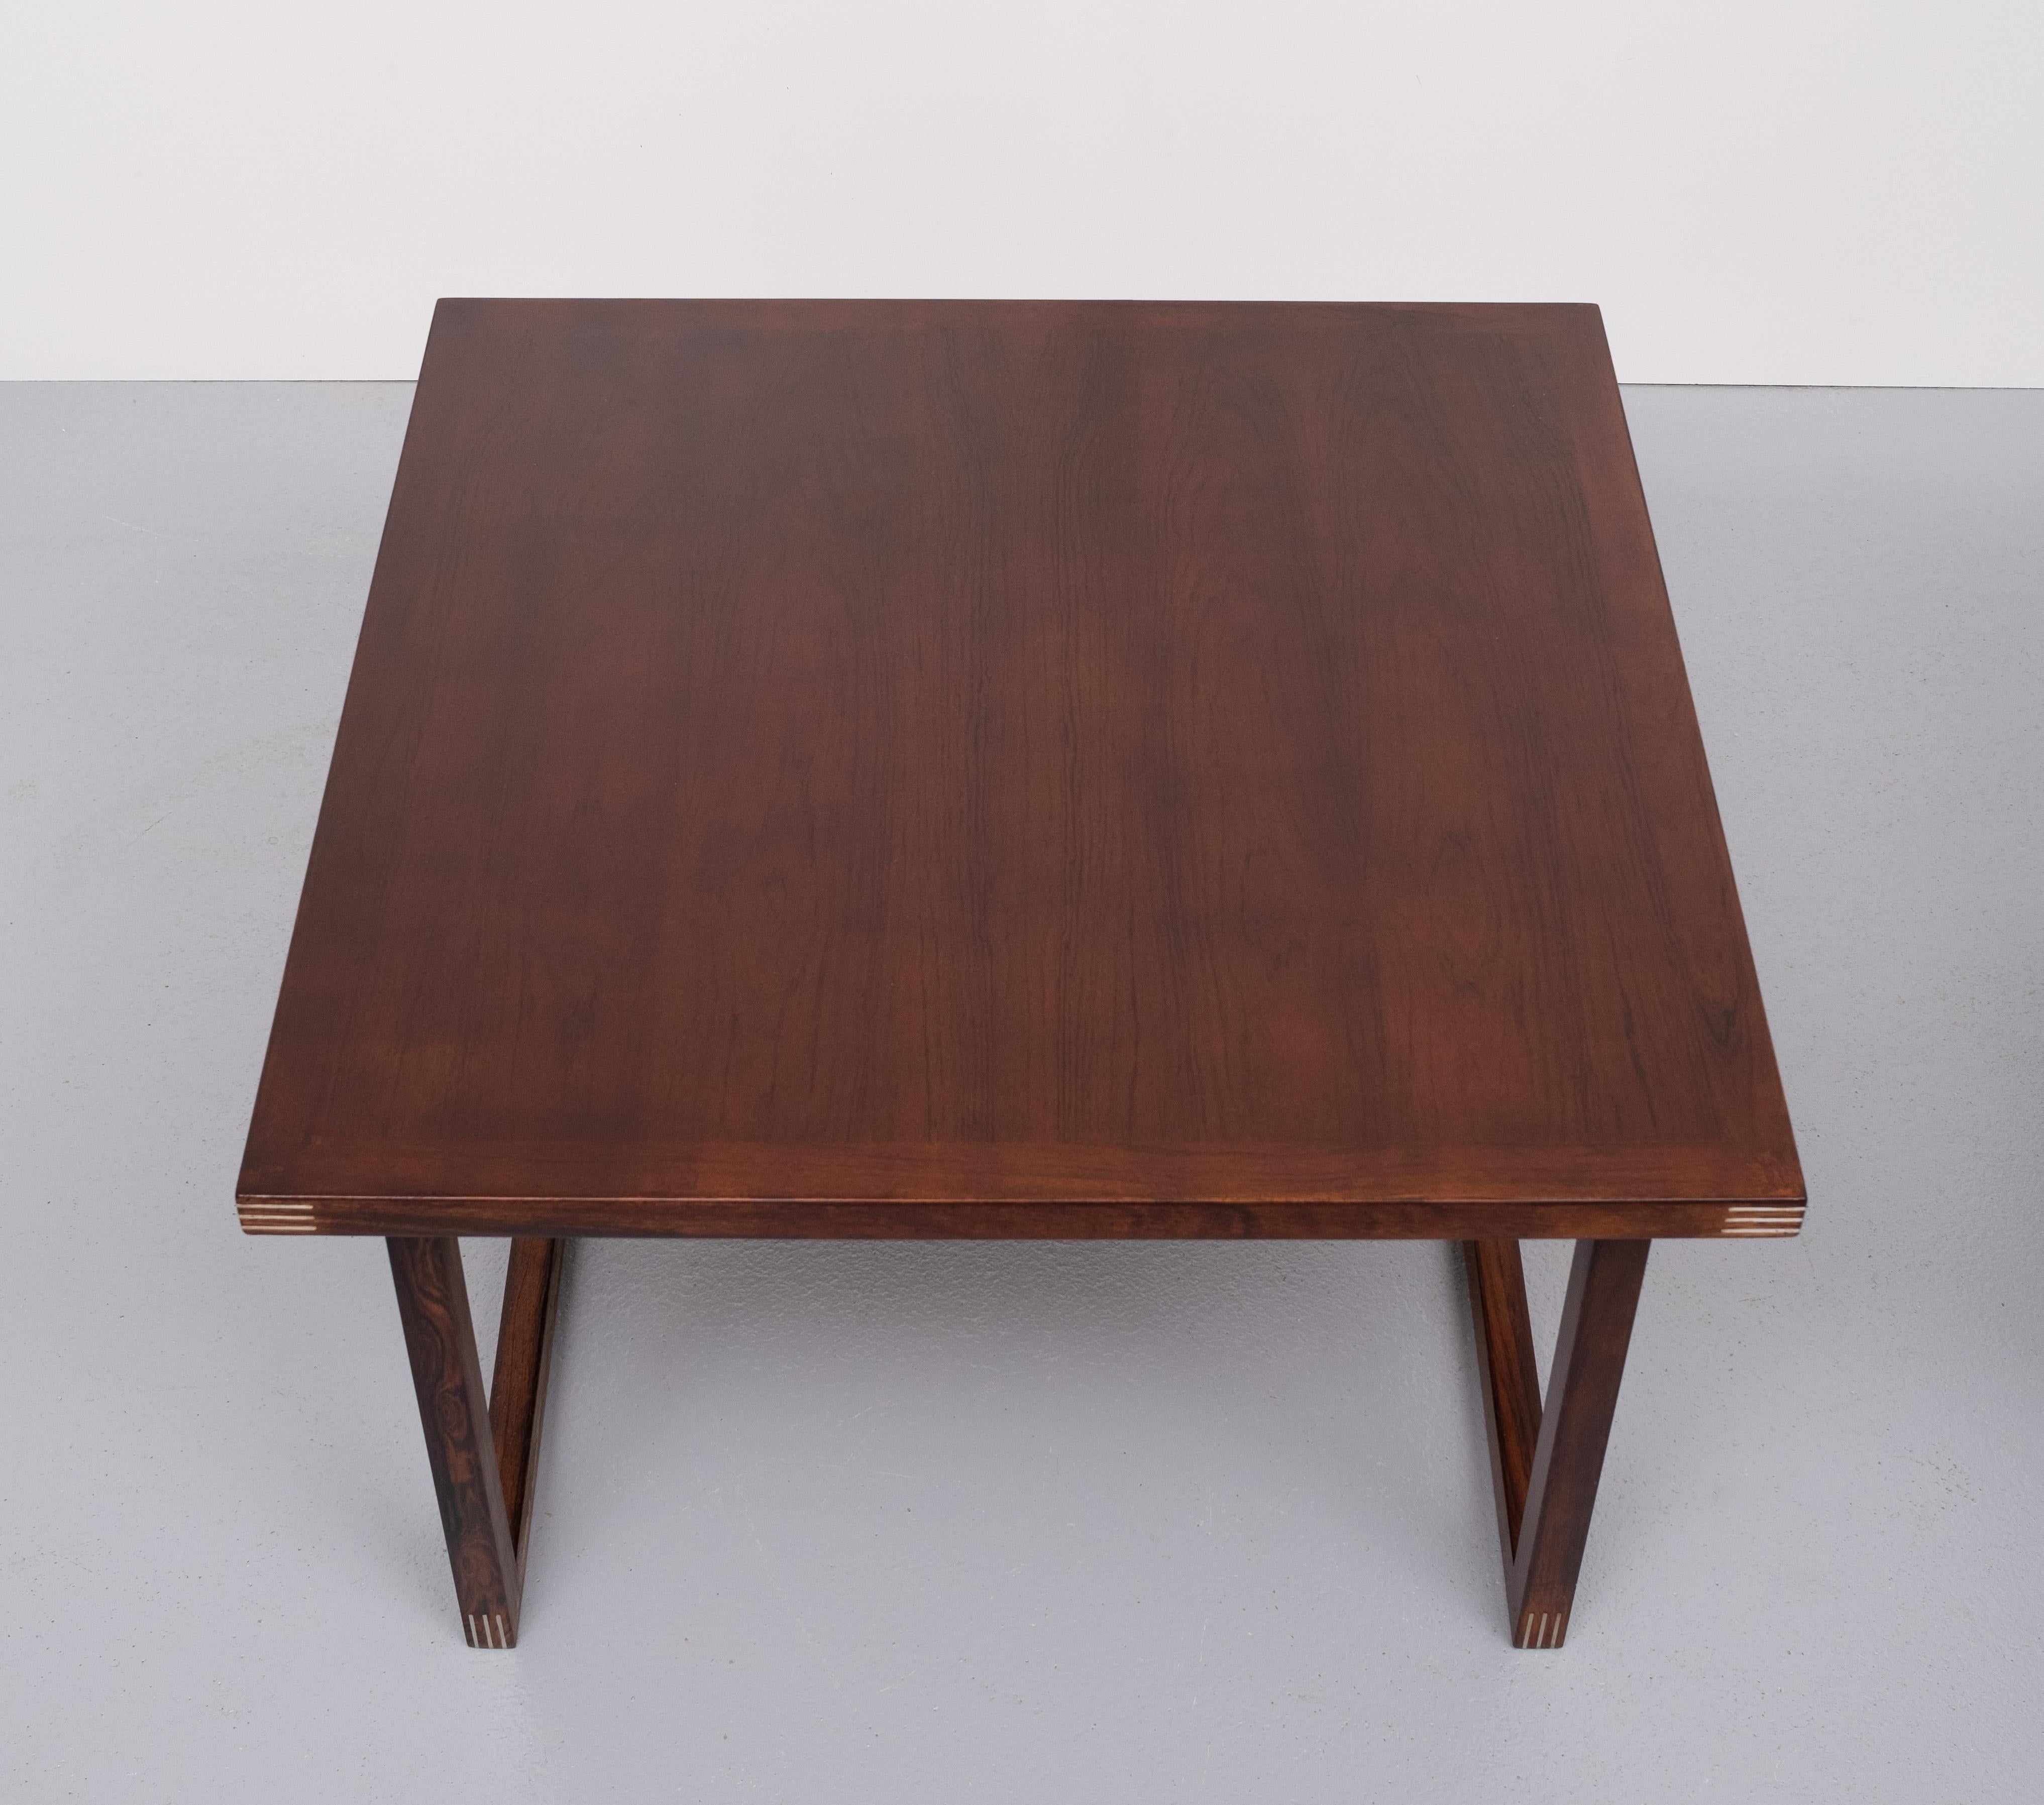 2 wooden Tables by Rud Thygesen for Heltborg Mobler, 1960s, Denmark 1